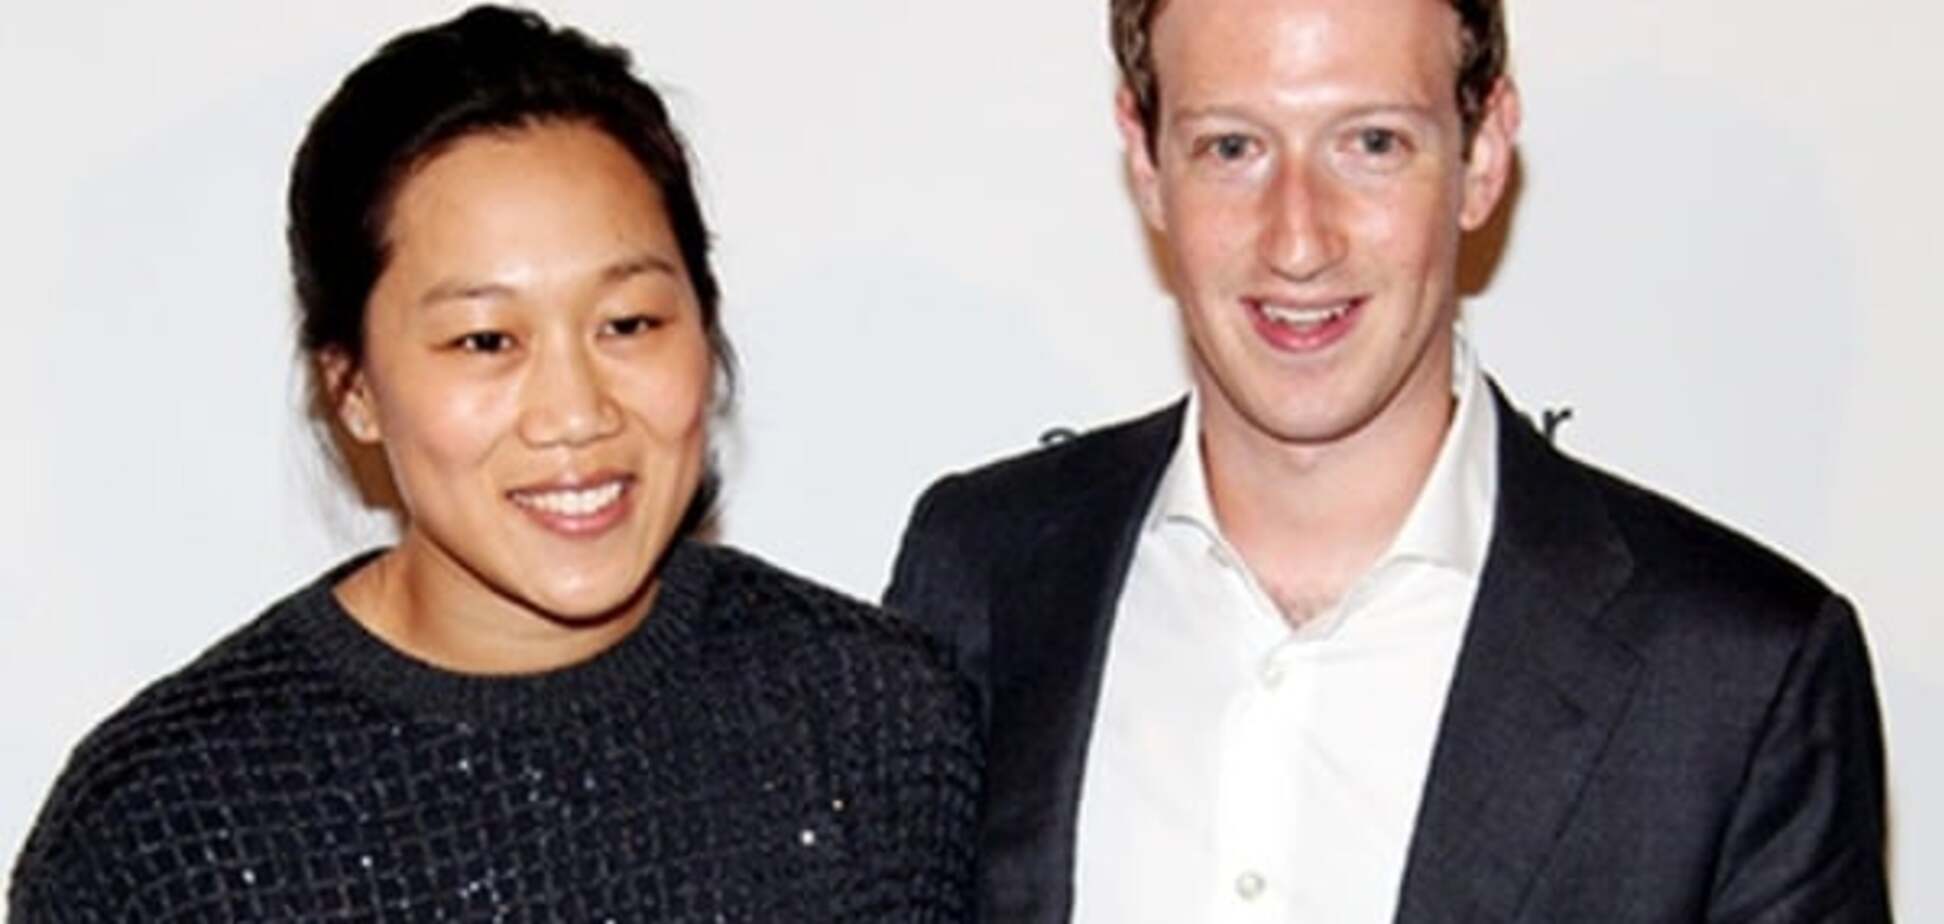 Жена миллионера Марка Цукерберга после родов вышла в мешковатом платье